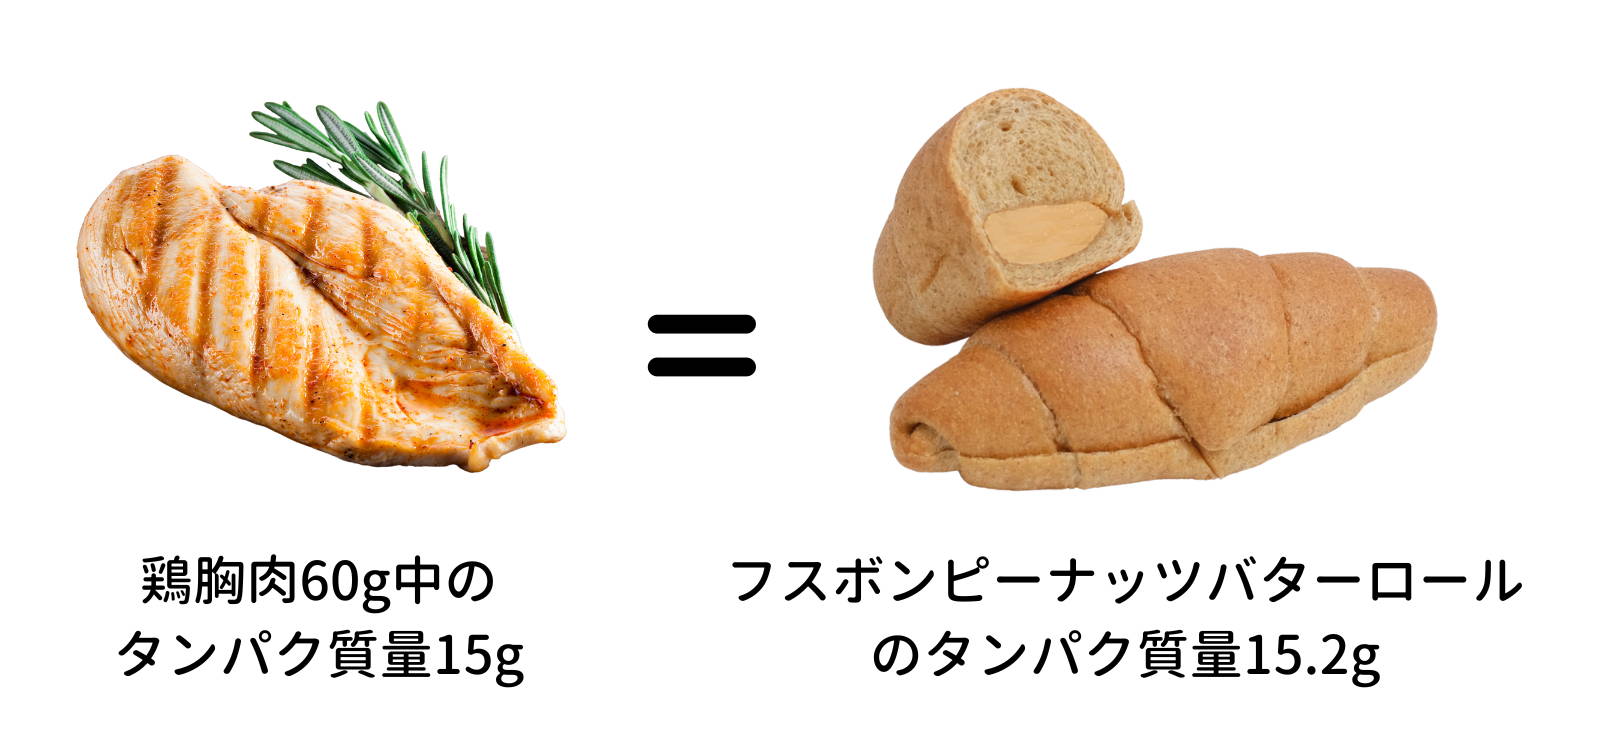 フスボンピーナッツバターサンドに含まれるタンパク質量を鶏胸肉と比較